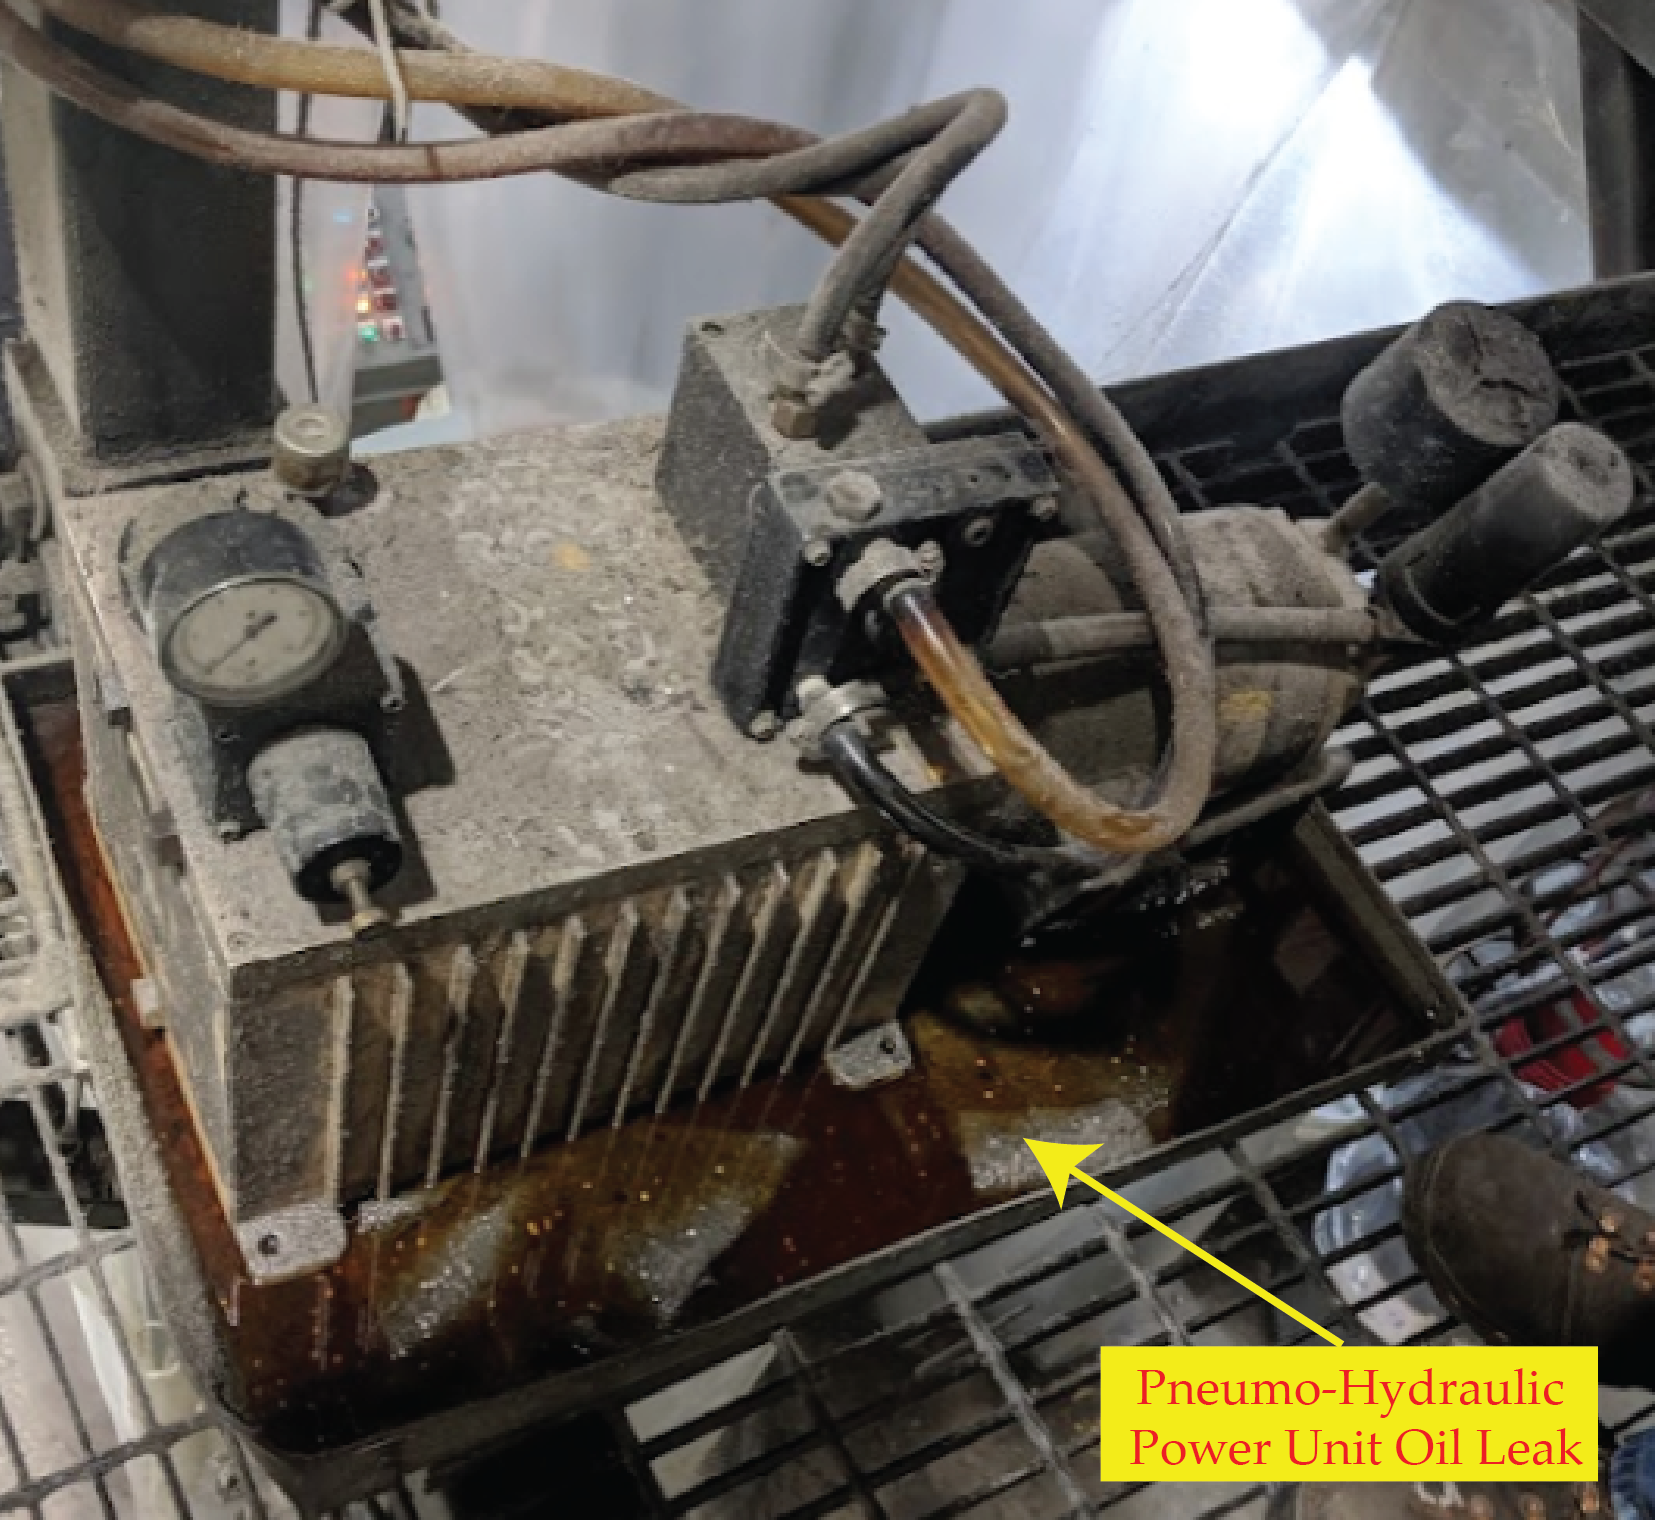 Hydraulic Leak on Pneumo-hydraulic Power Unit